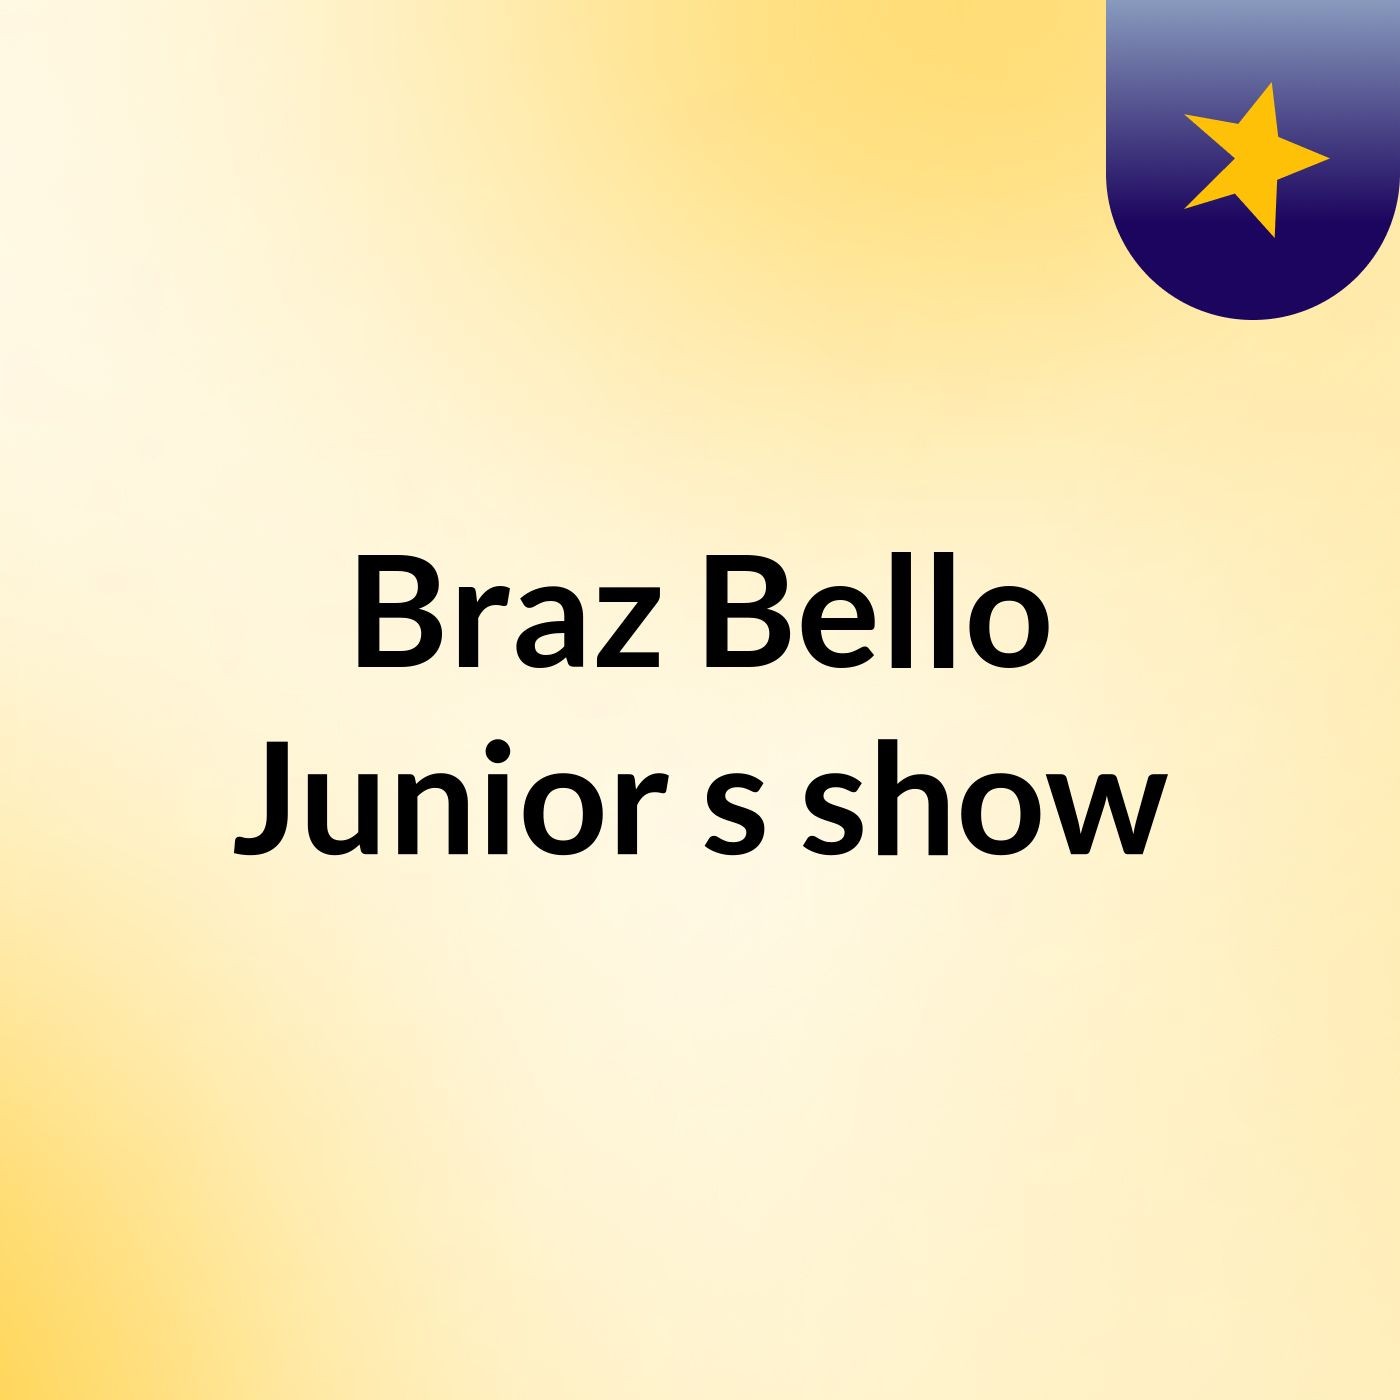 Braz Bello Junior's show